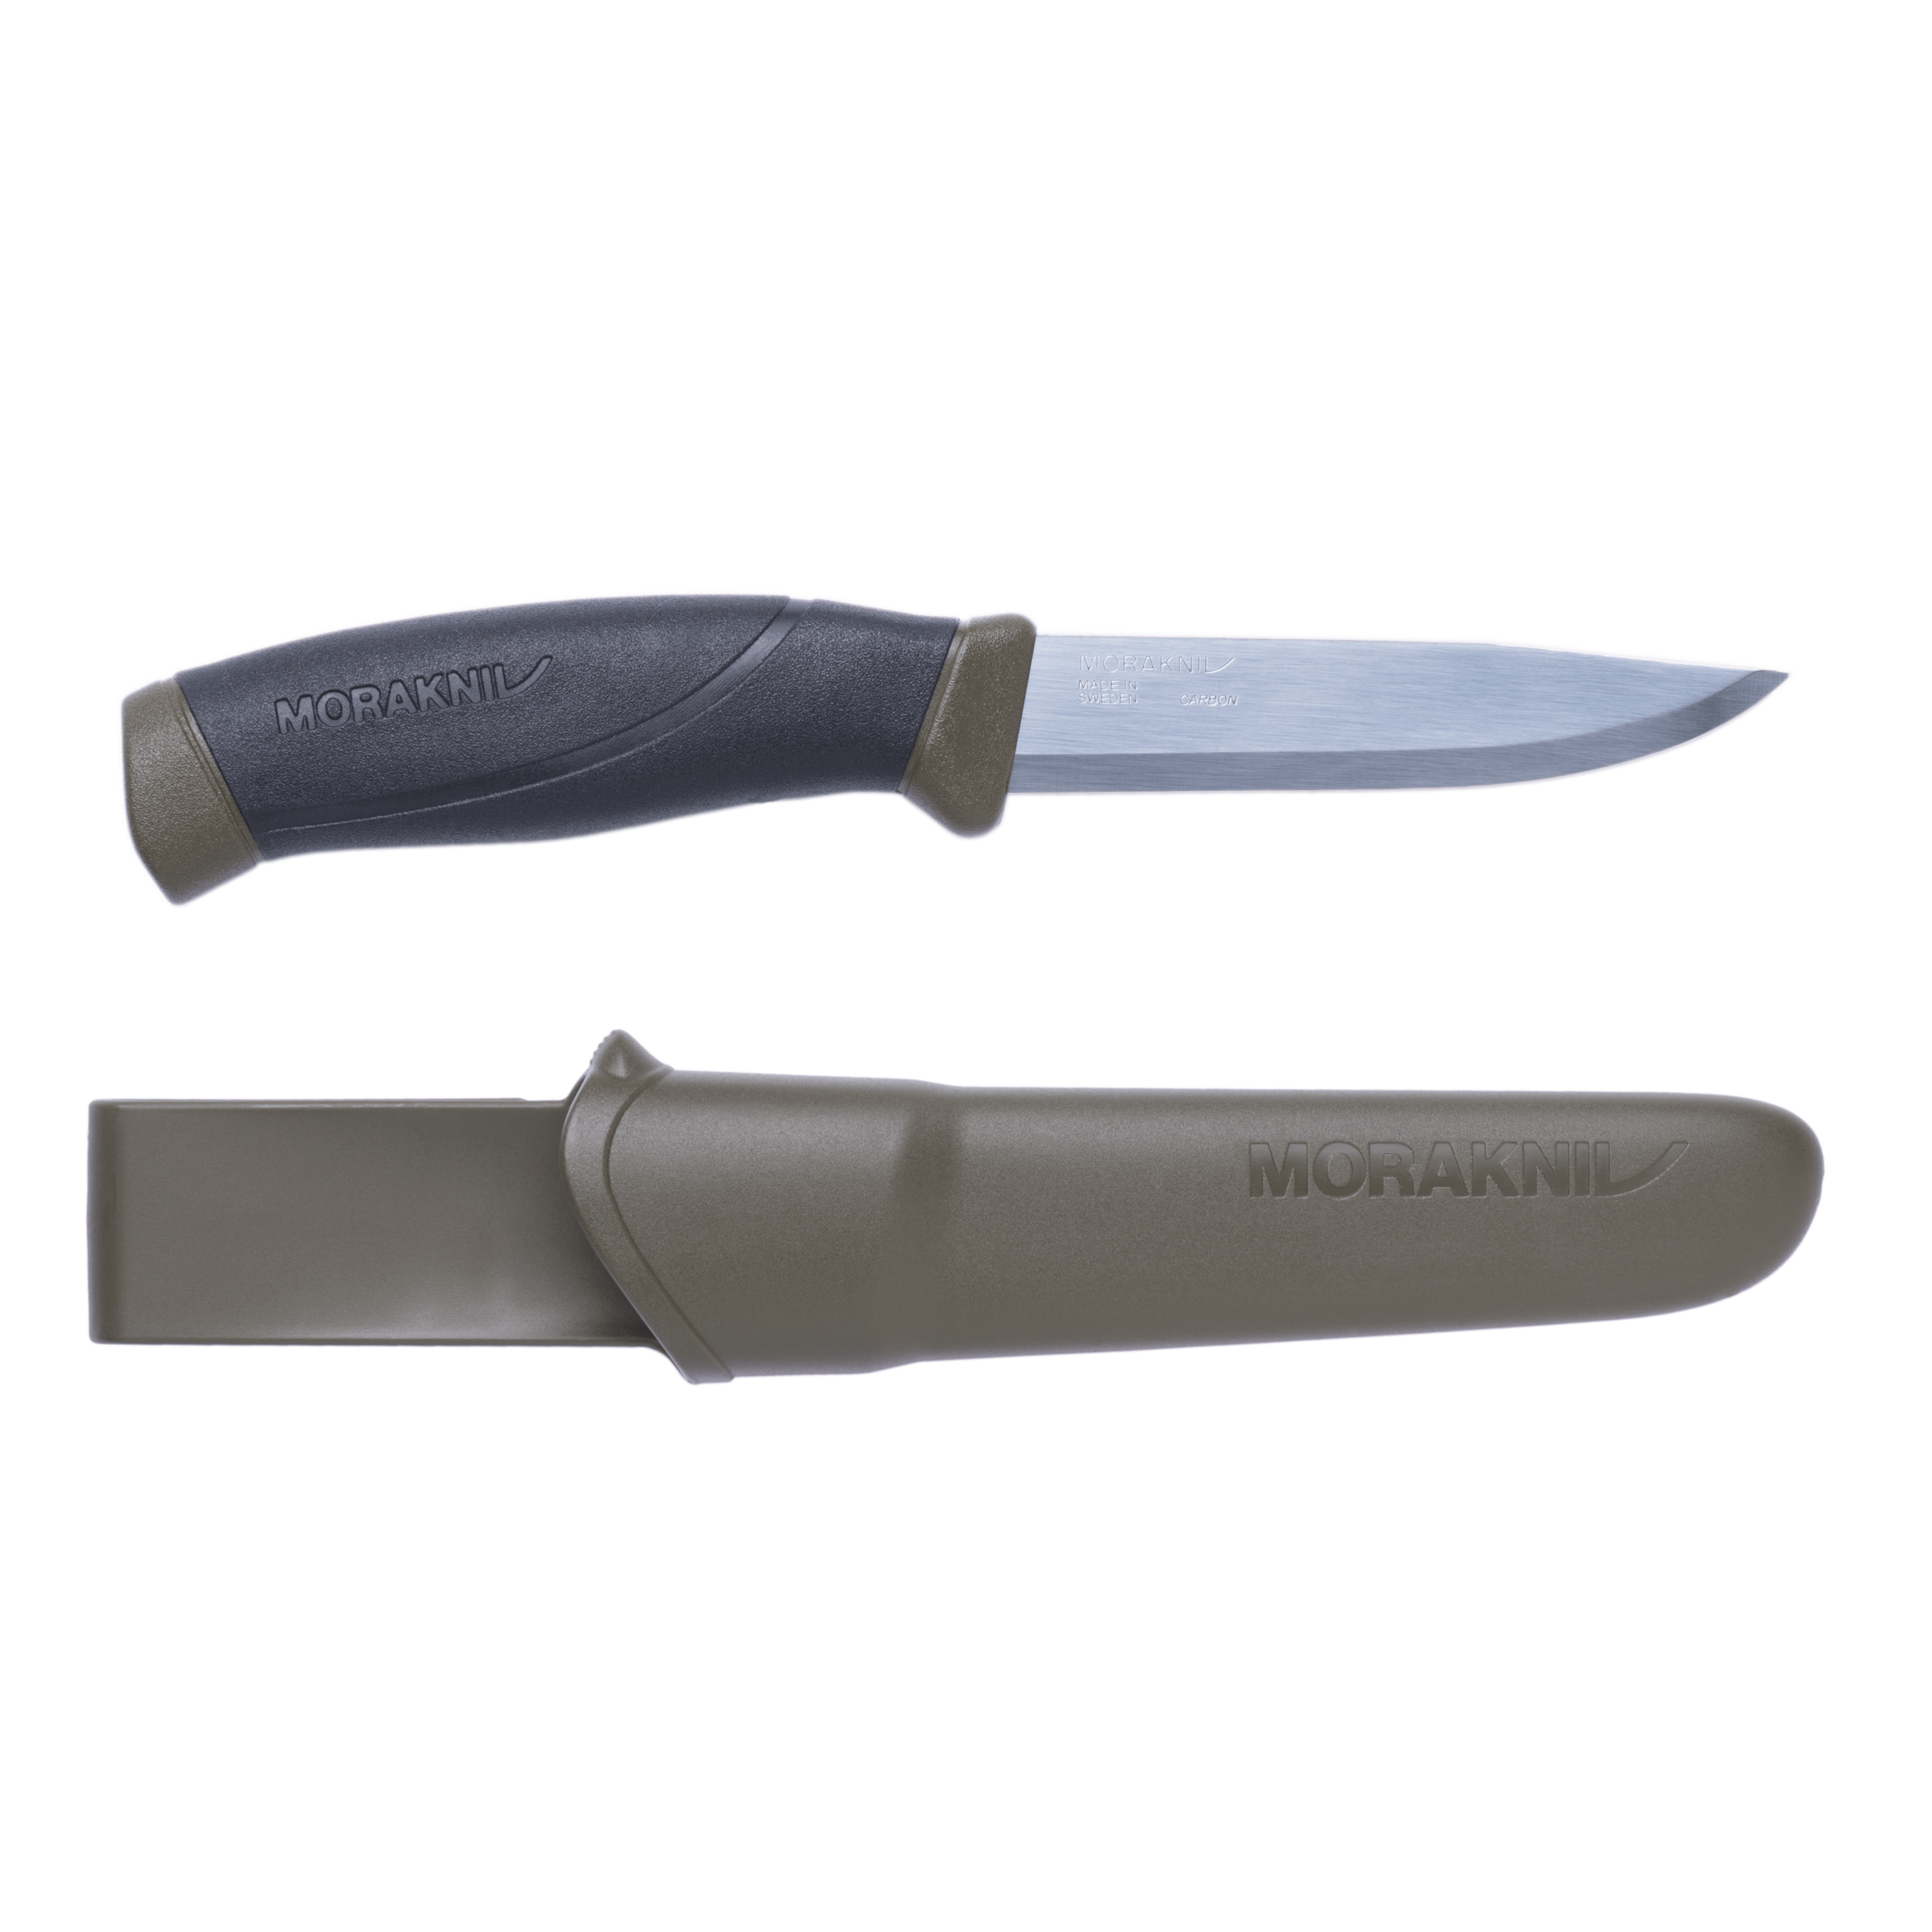 Medium Round Knife - Solid Rock Knives